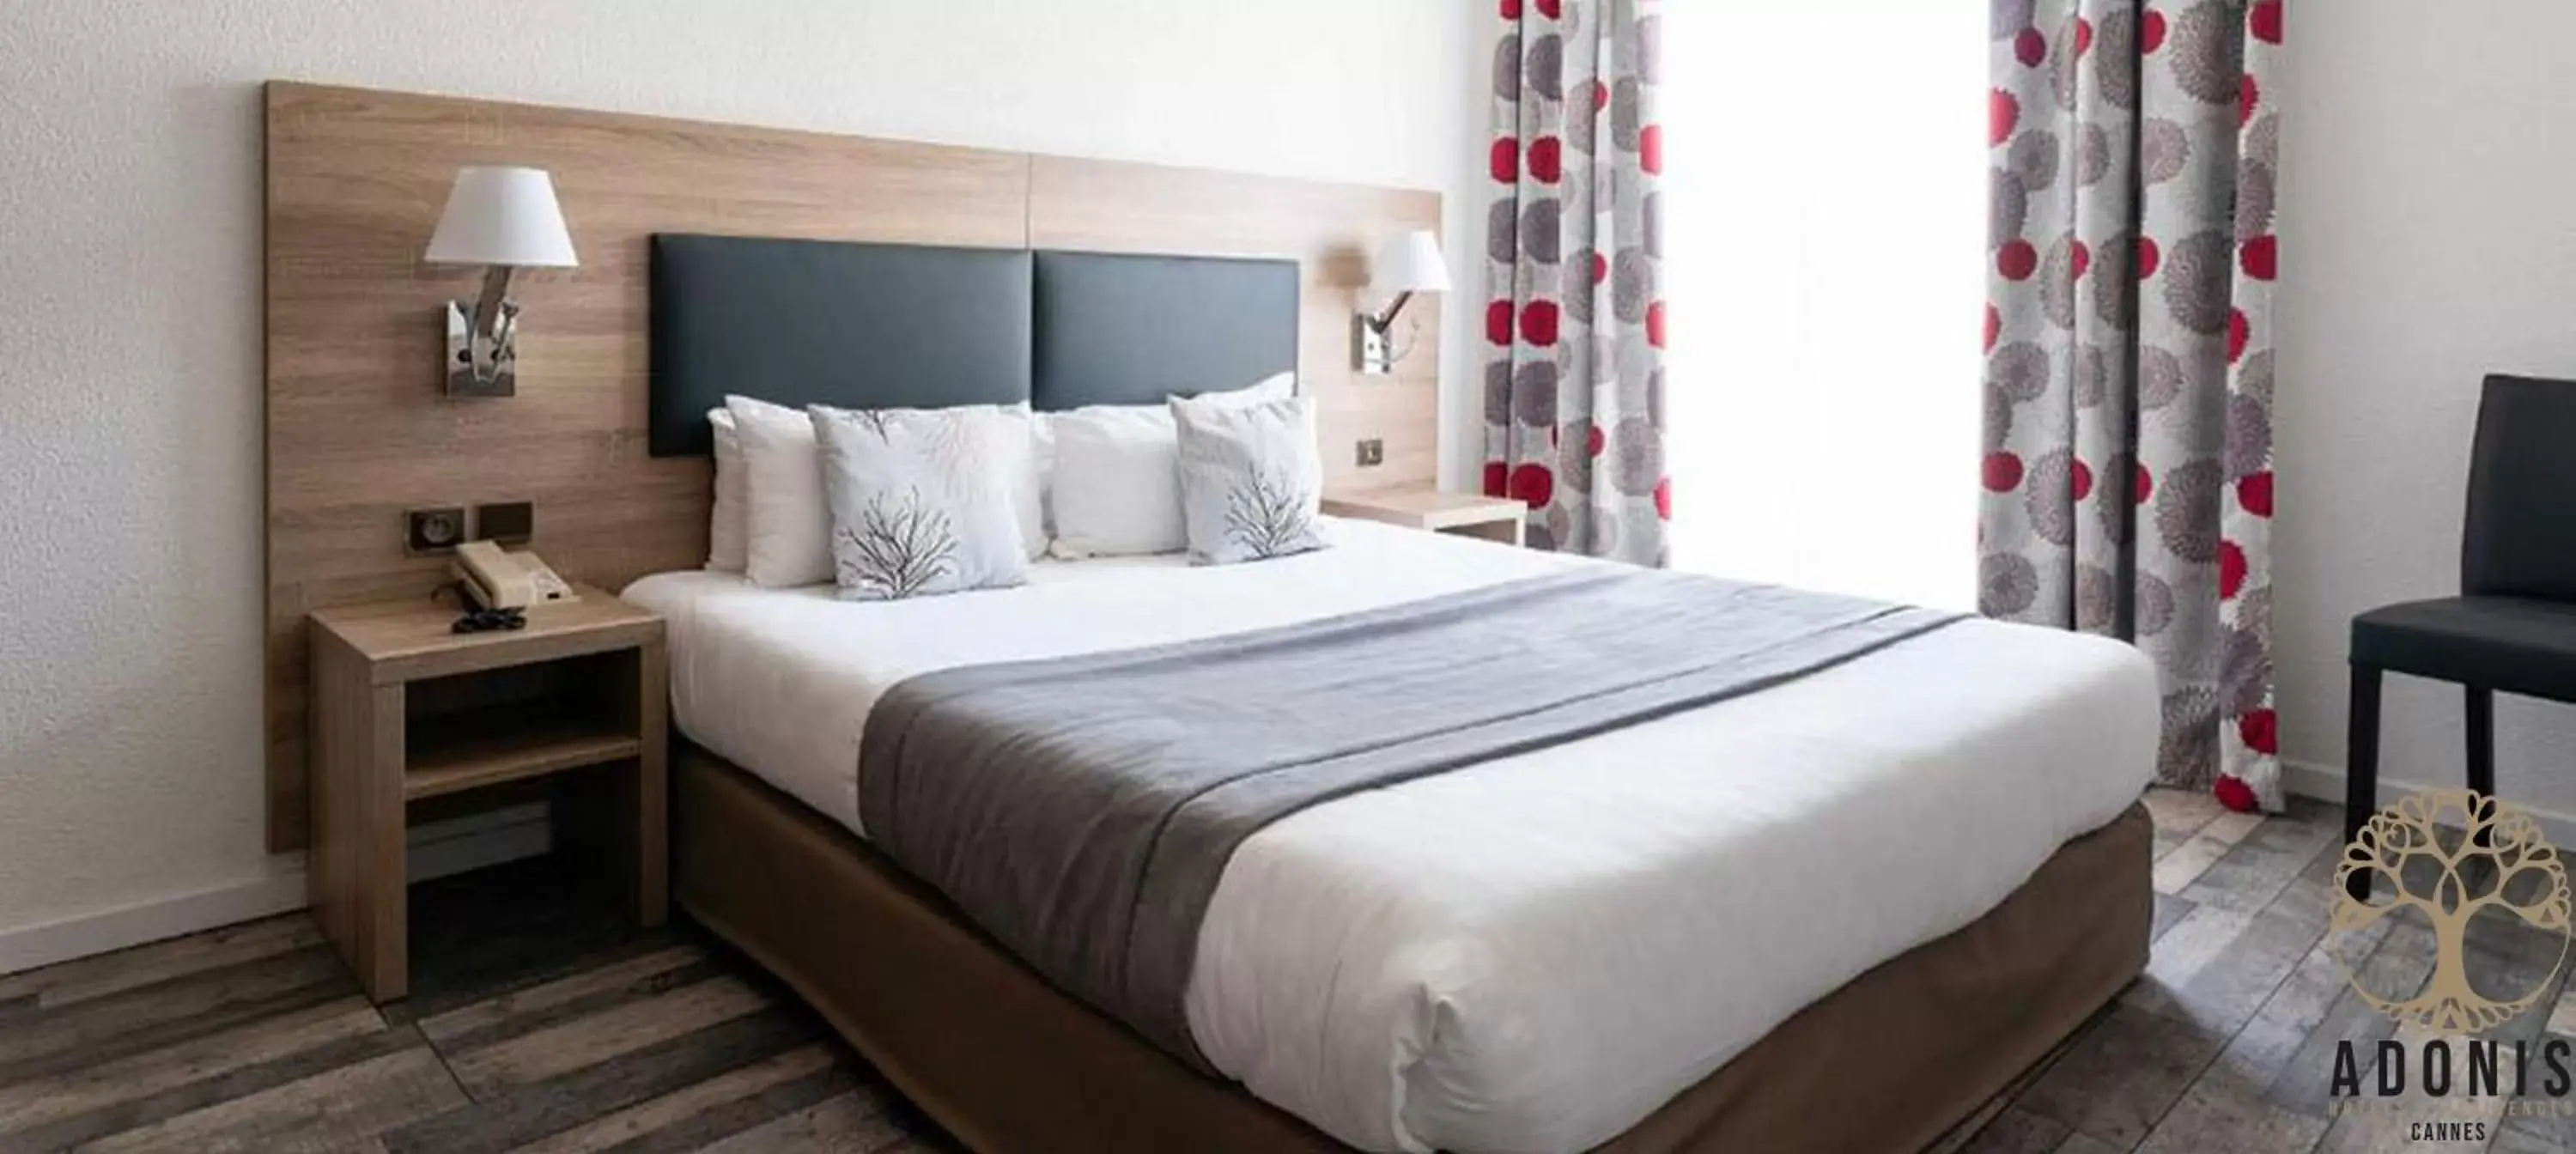 Bedroom, Bed in Adonis Cannes - Hôtel Thomas